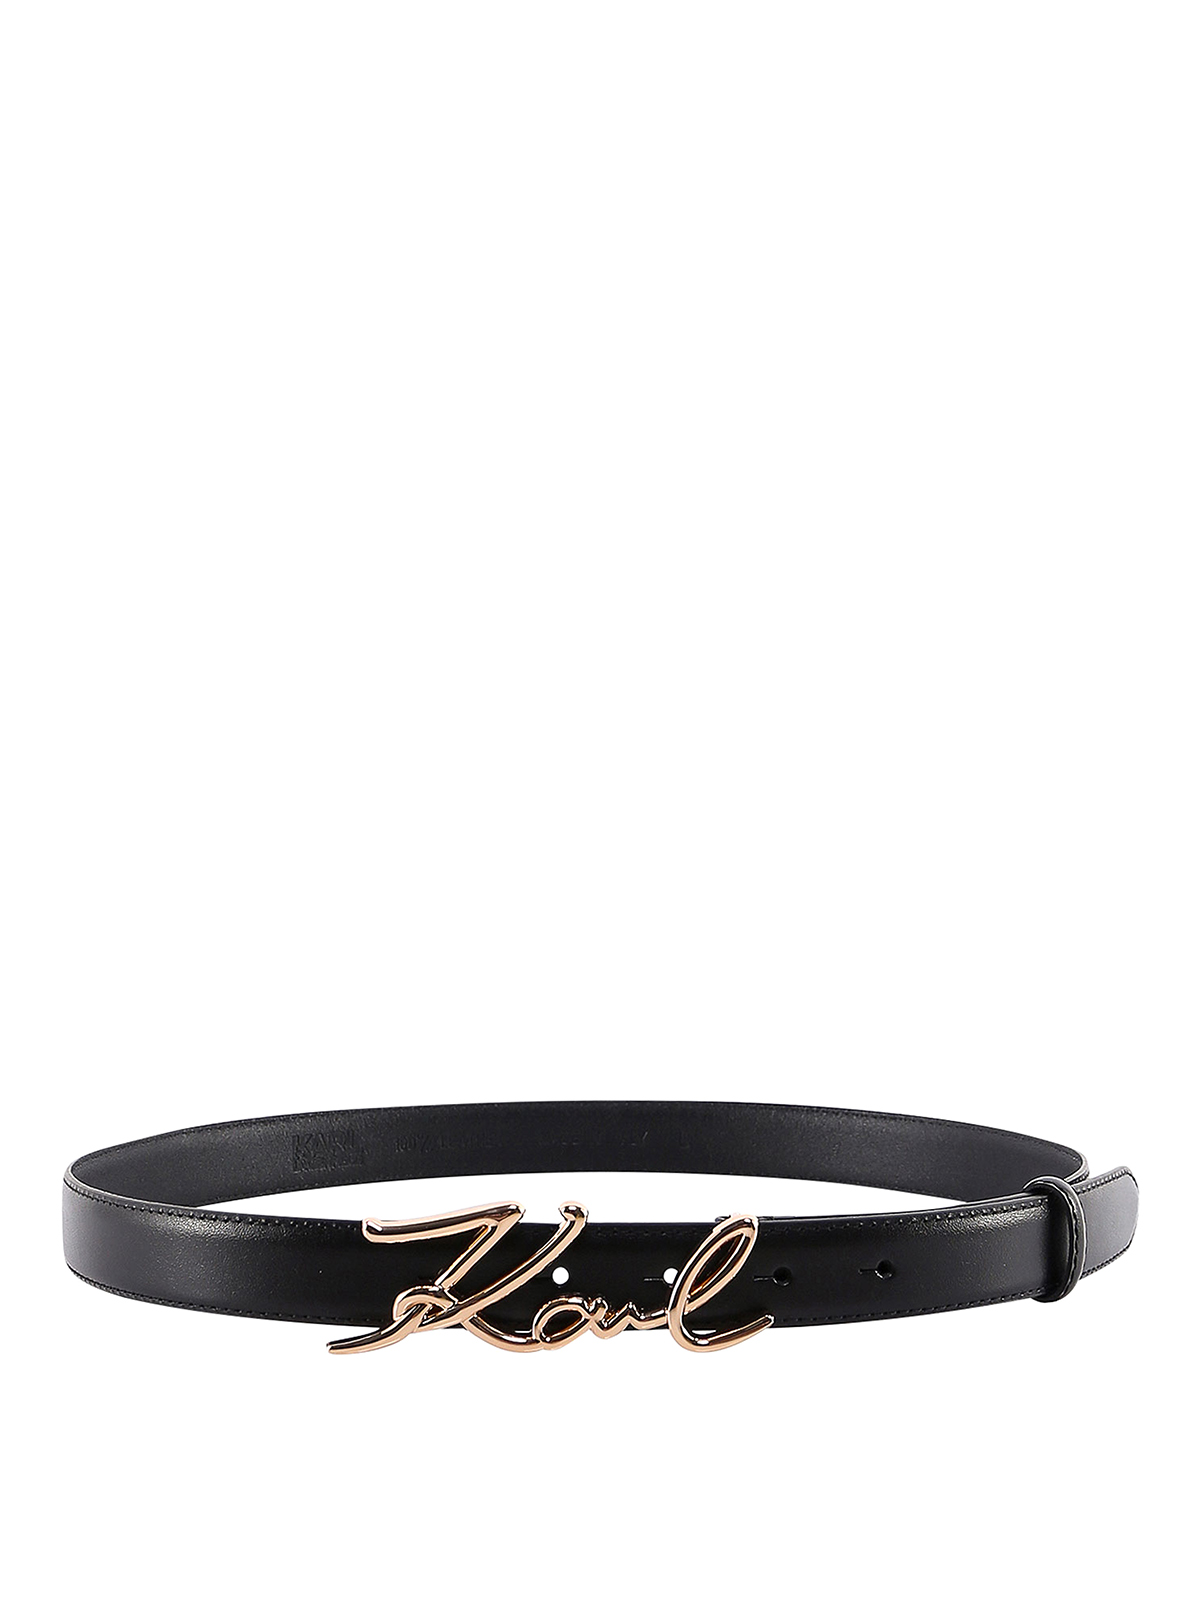 Belts Karl Lagerfeld - Belt - 205W3103997 | Shop online at iKRIX